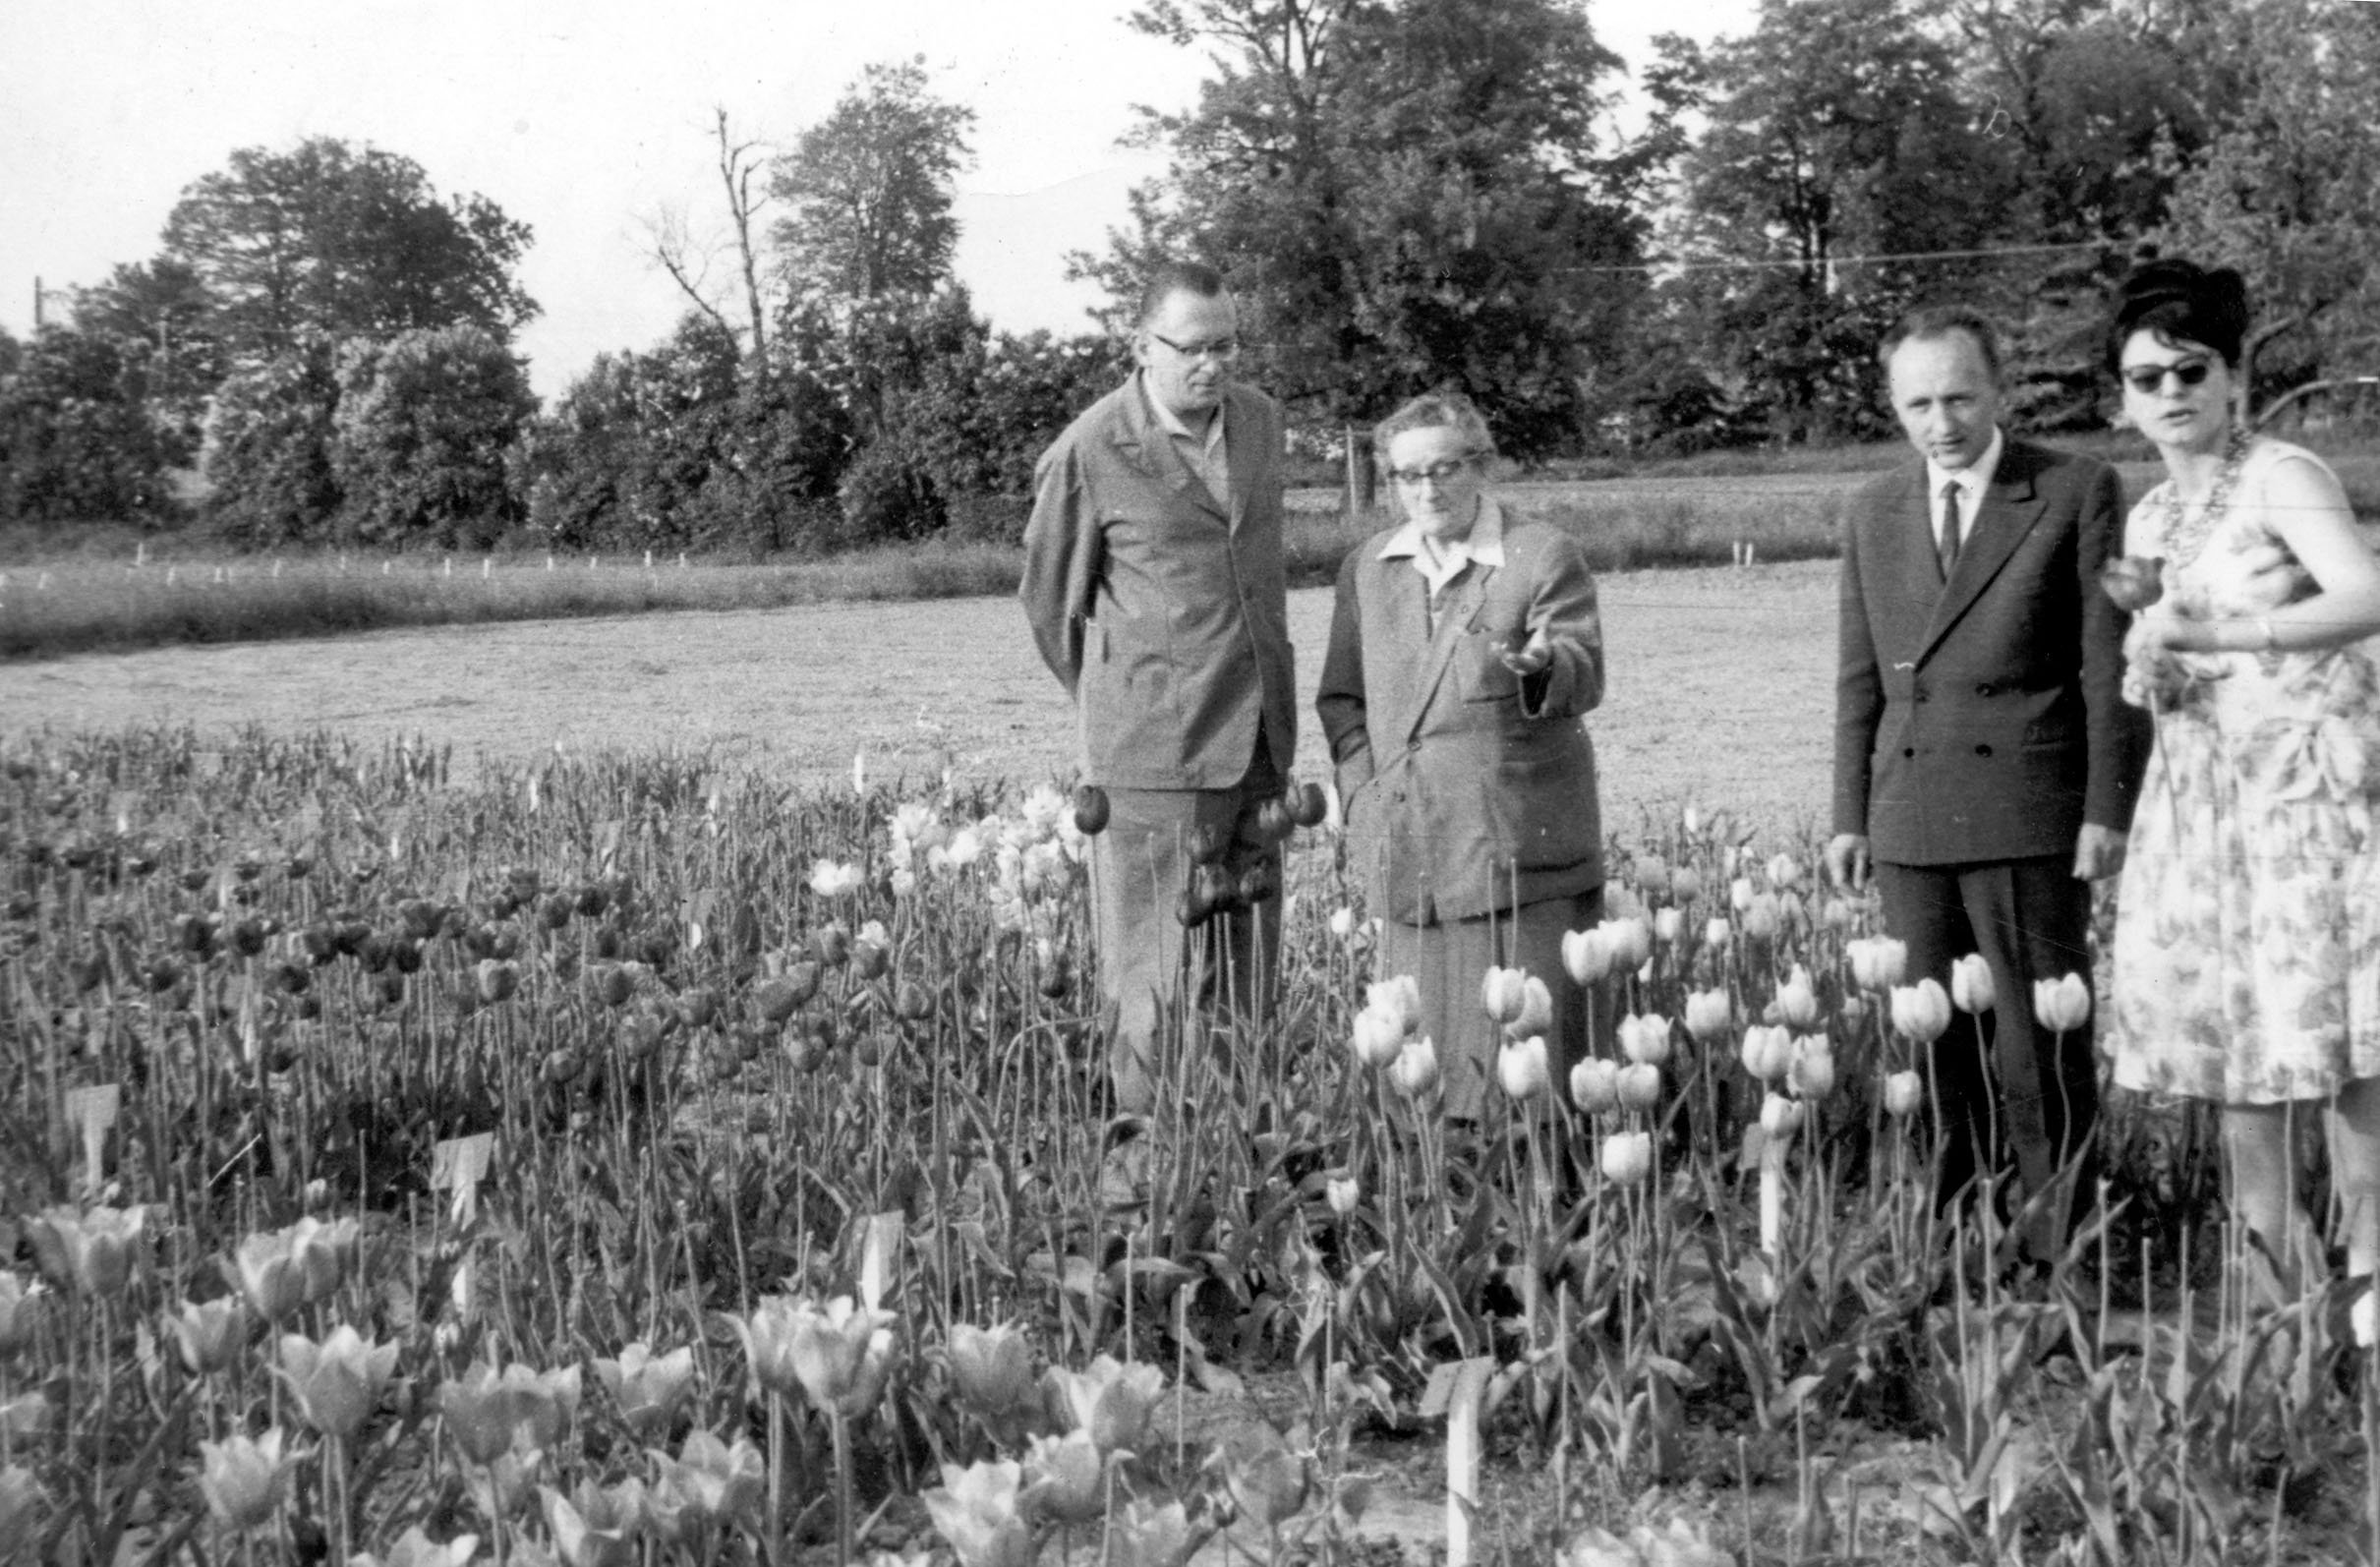 kwiaty - hodowla zachowawcza IHAR z lat 1960 - 1970